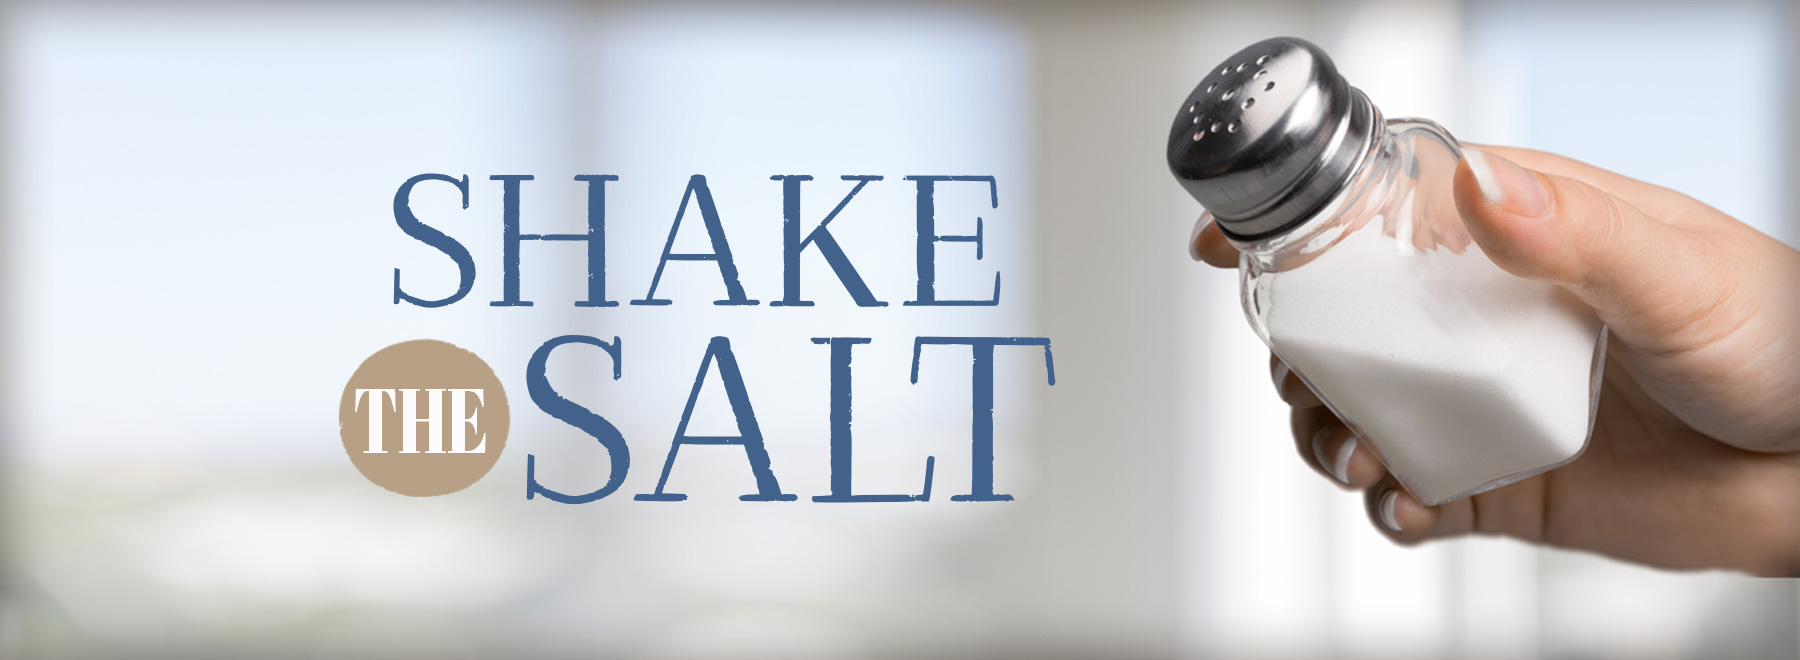 Portrait of hand shaking salt from salt shaker.